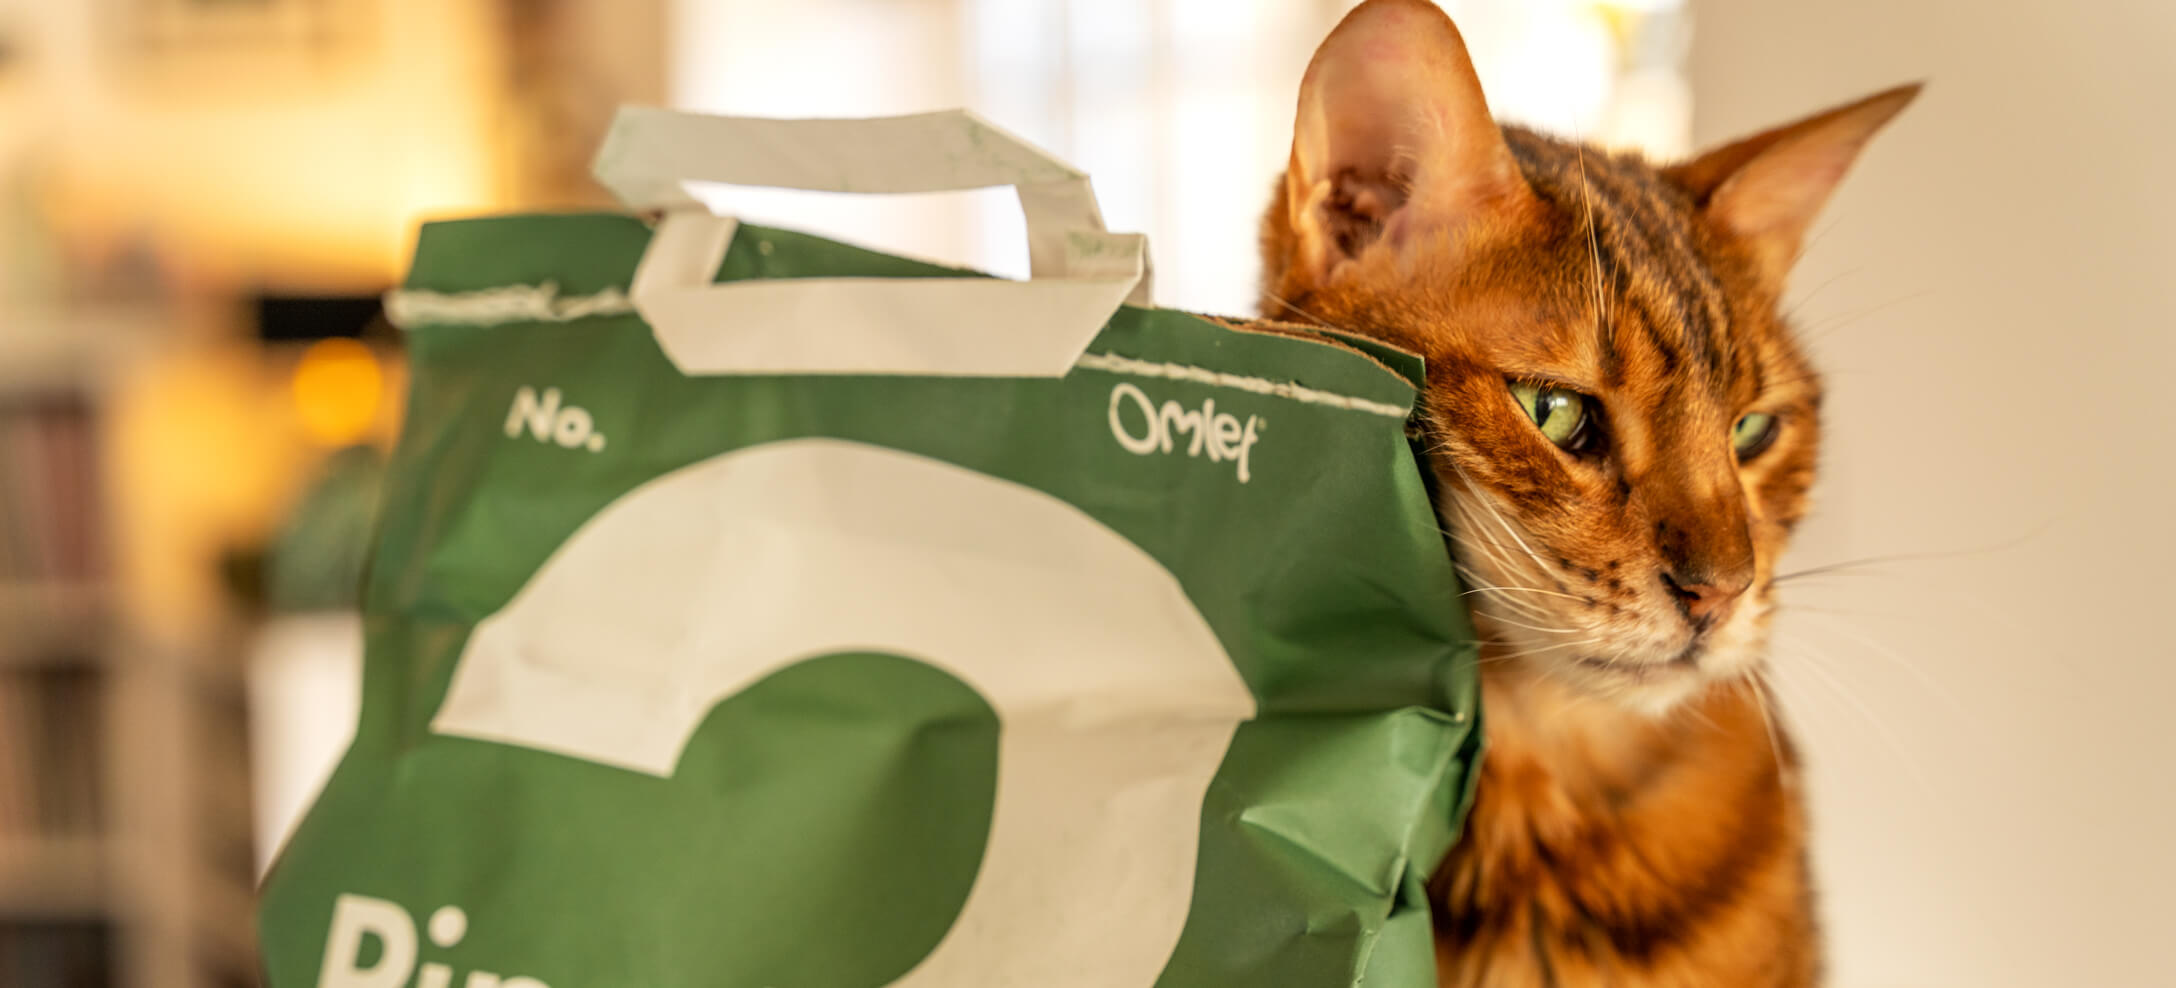 Un chat Bengal à côté d’un sac vert de litière pour chat